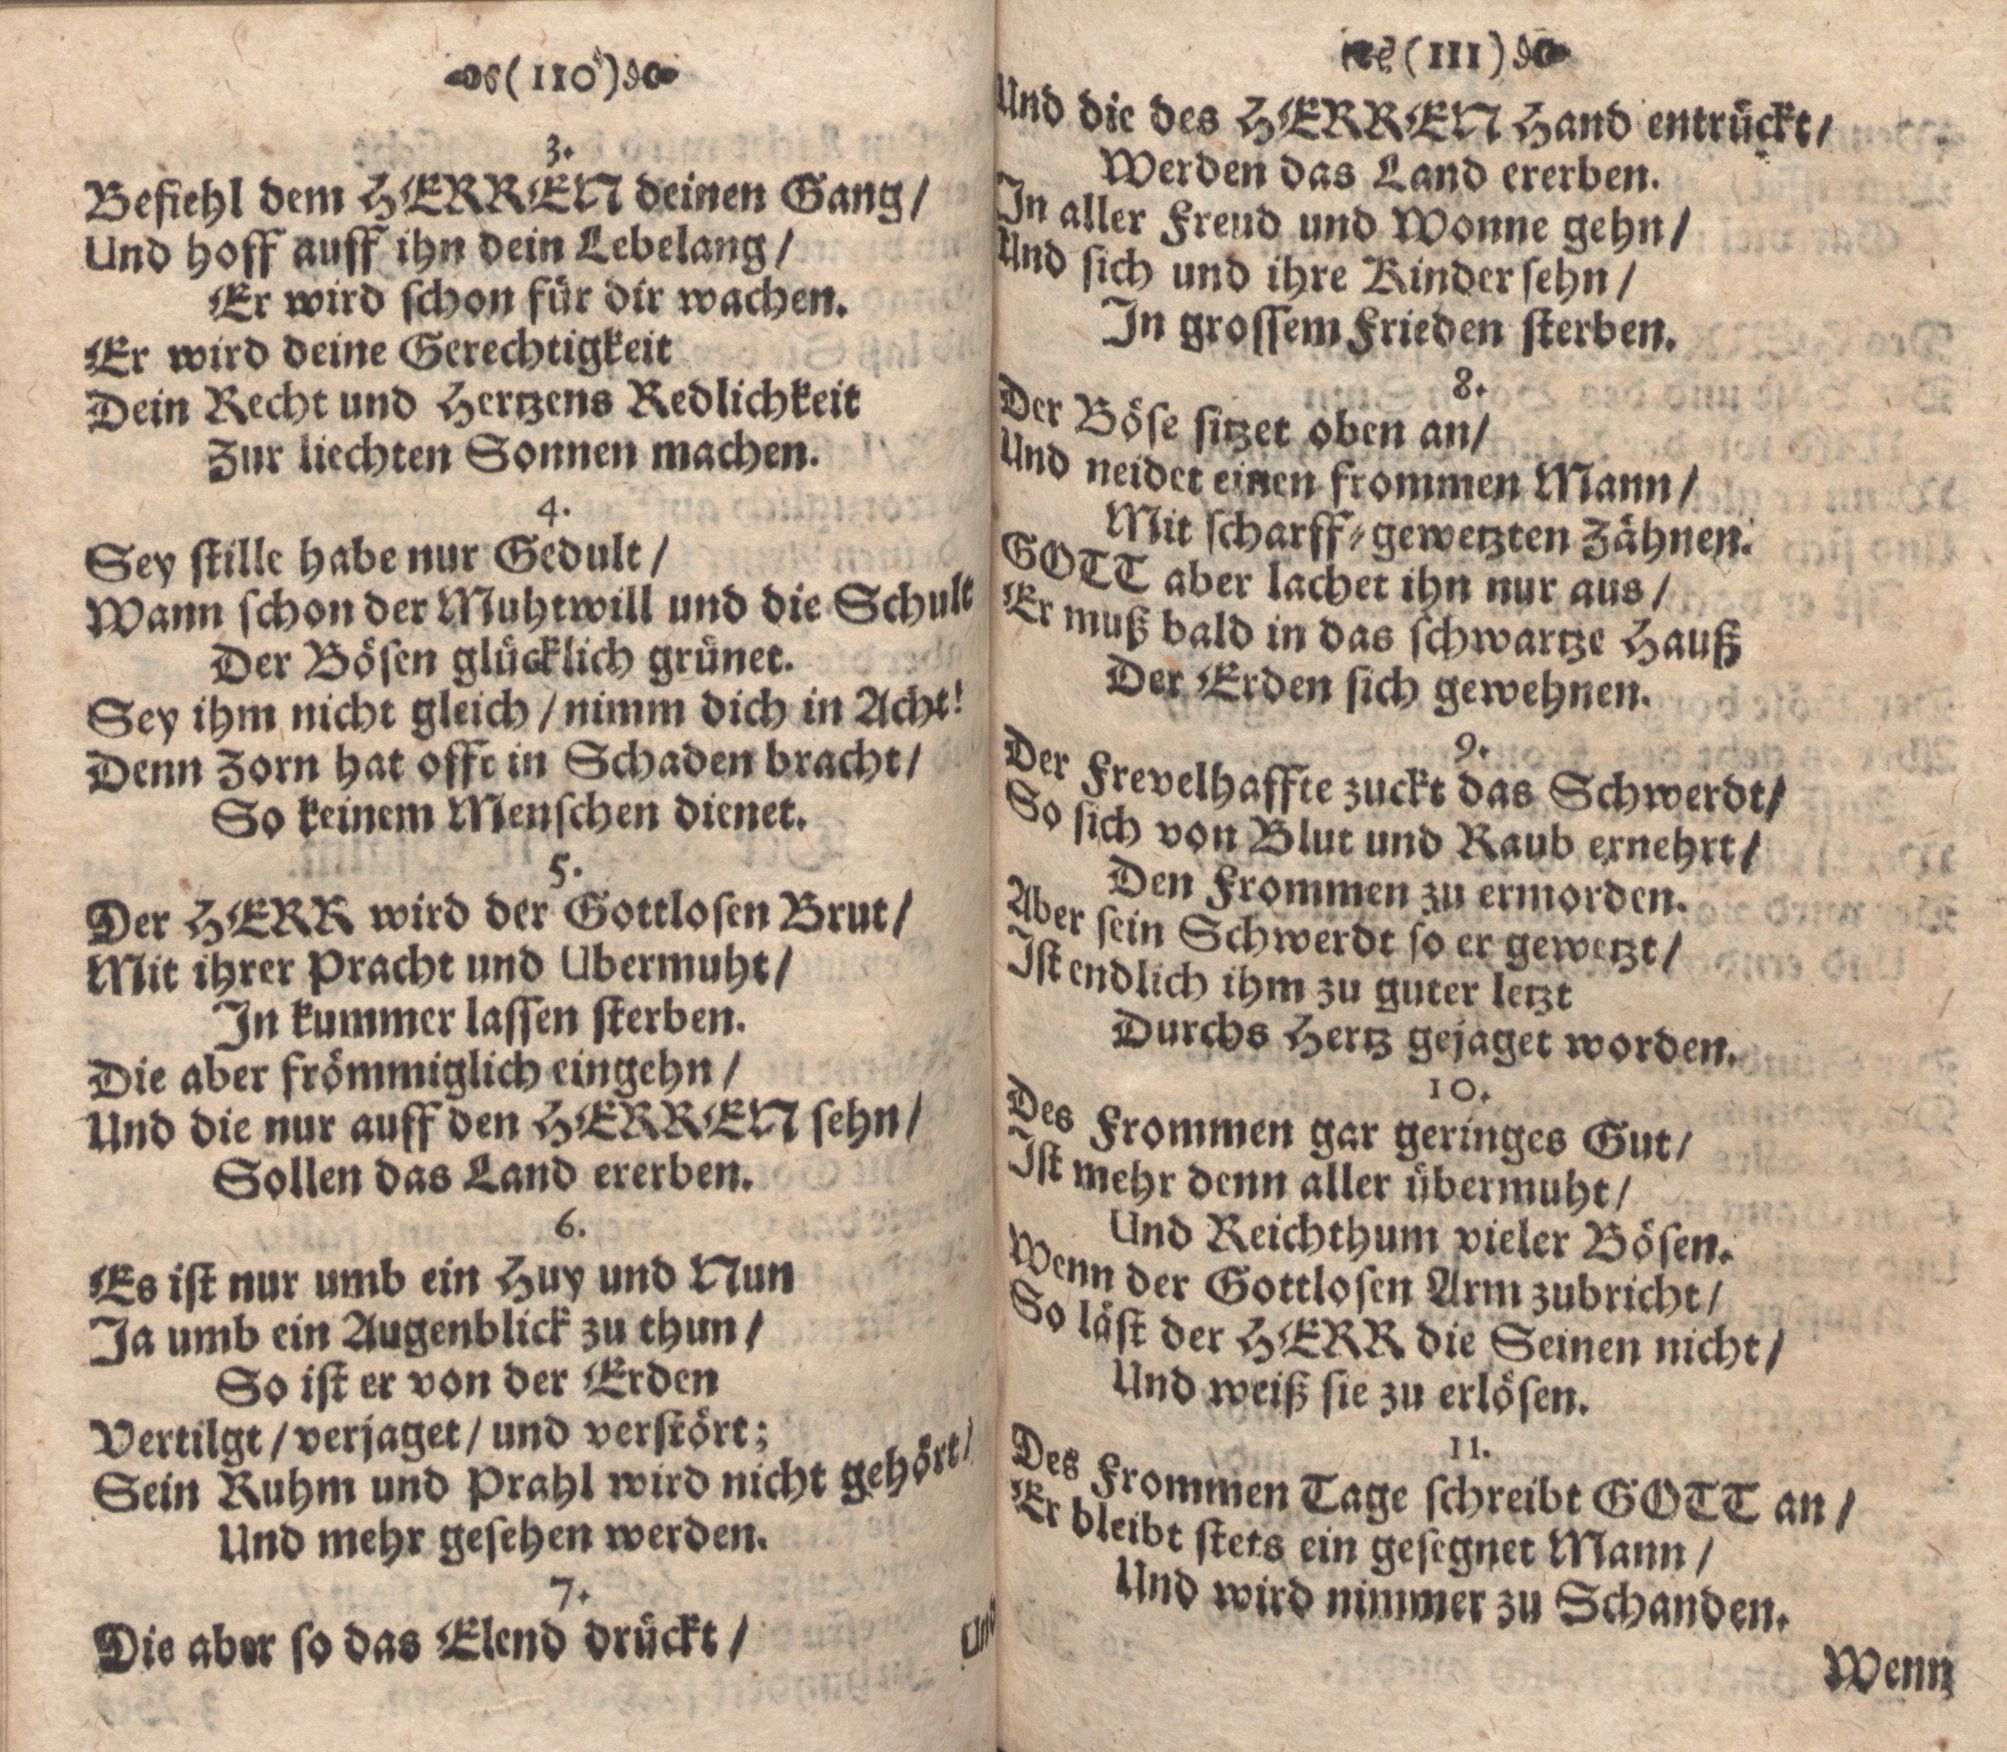 Der Verfolgete, Errettete und Lobsingende David (1686) | 56. (110-111) Haupttext